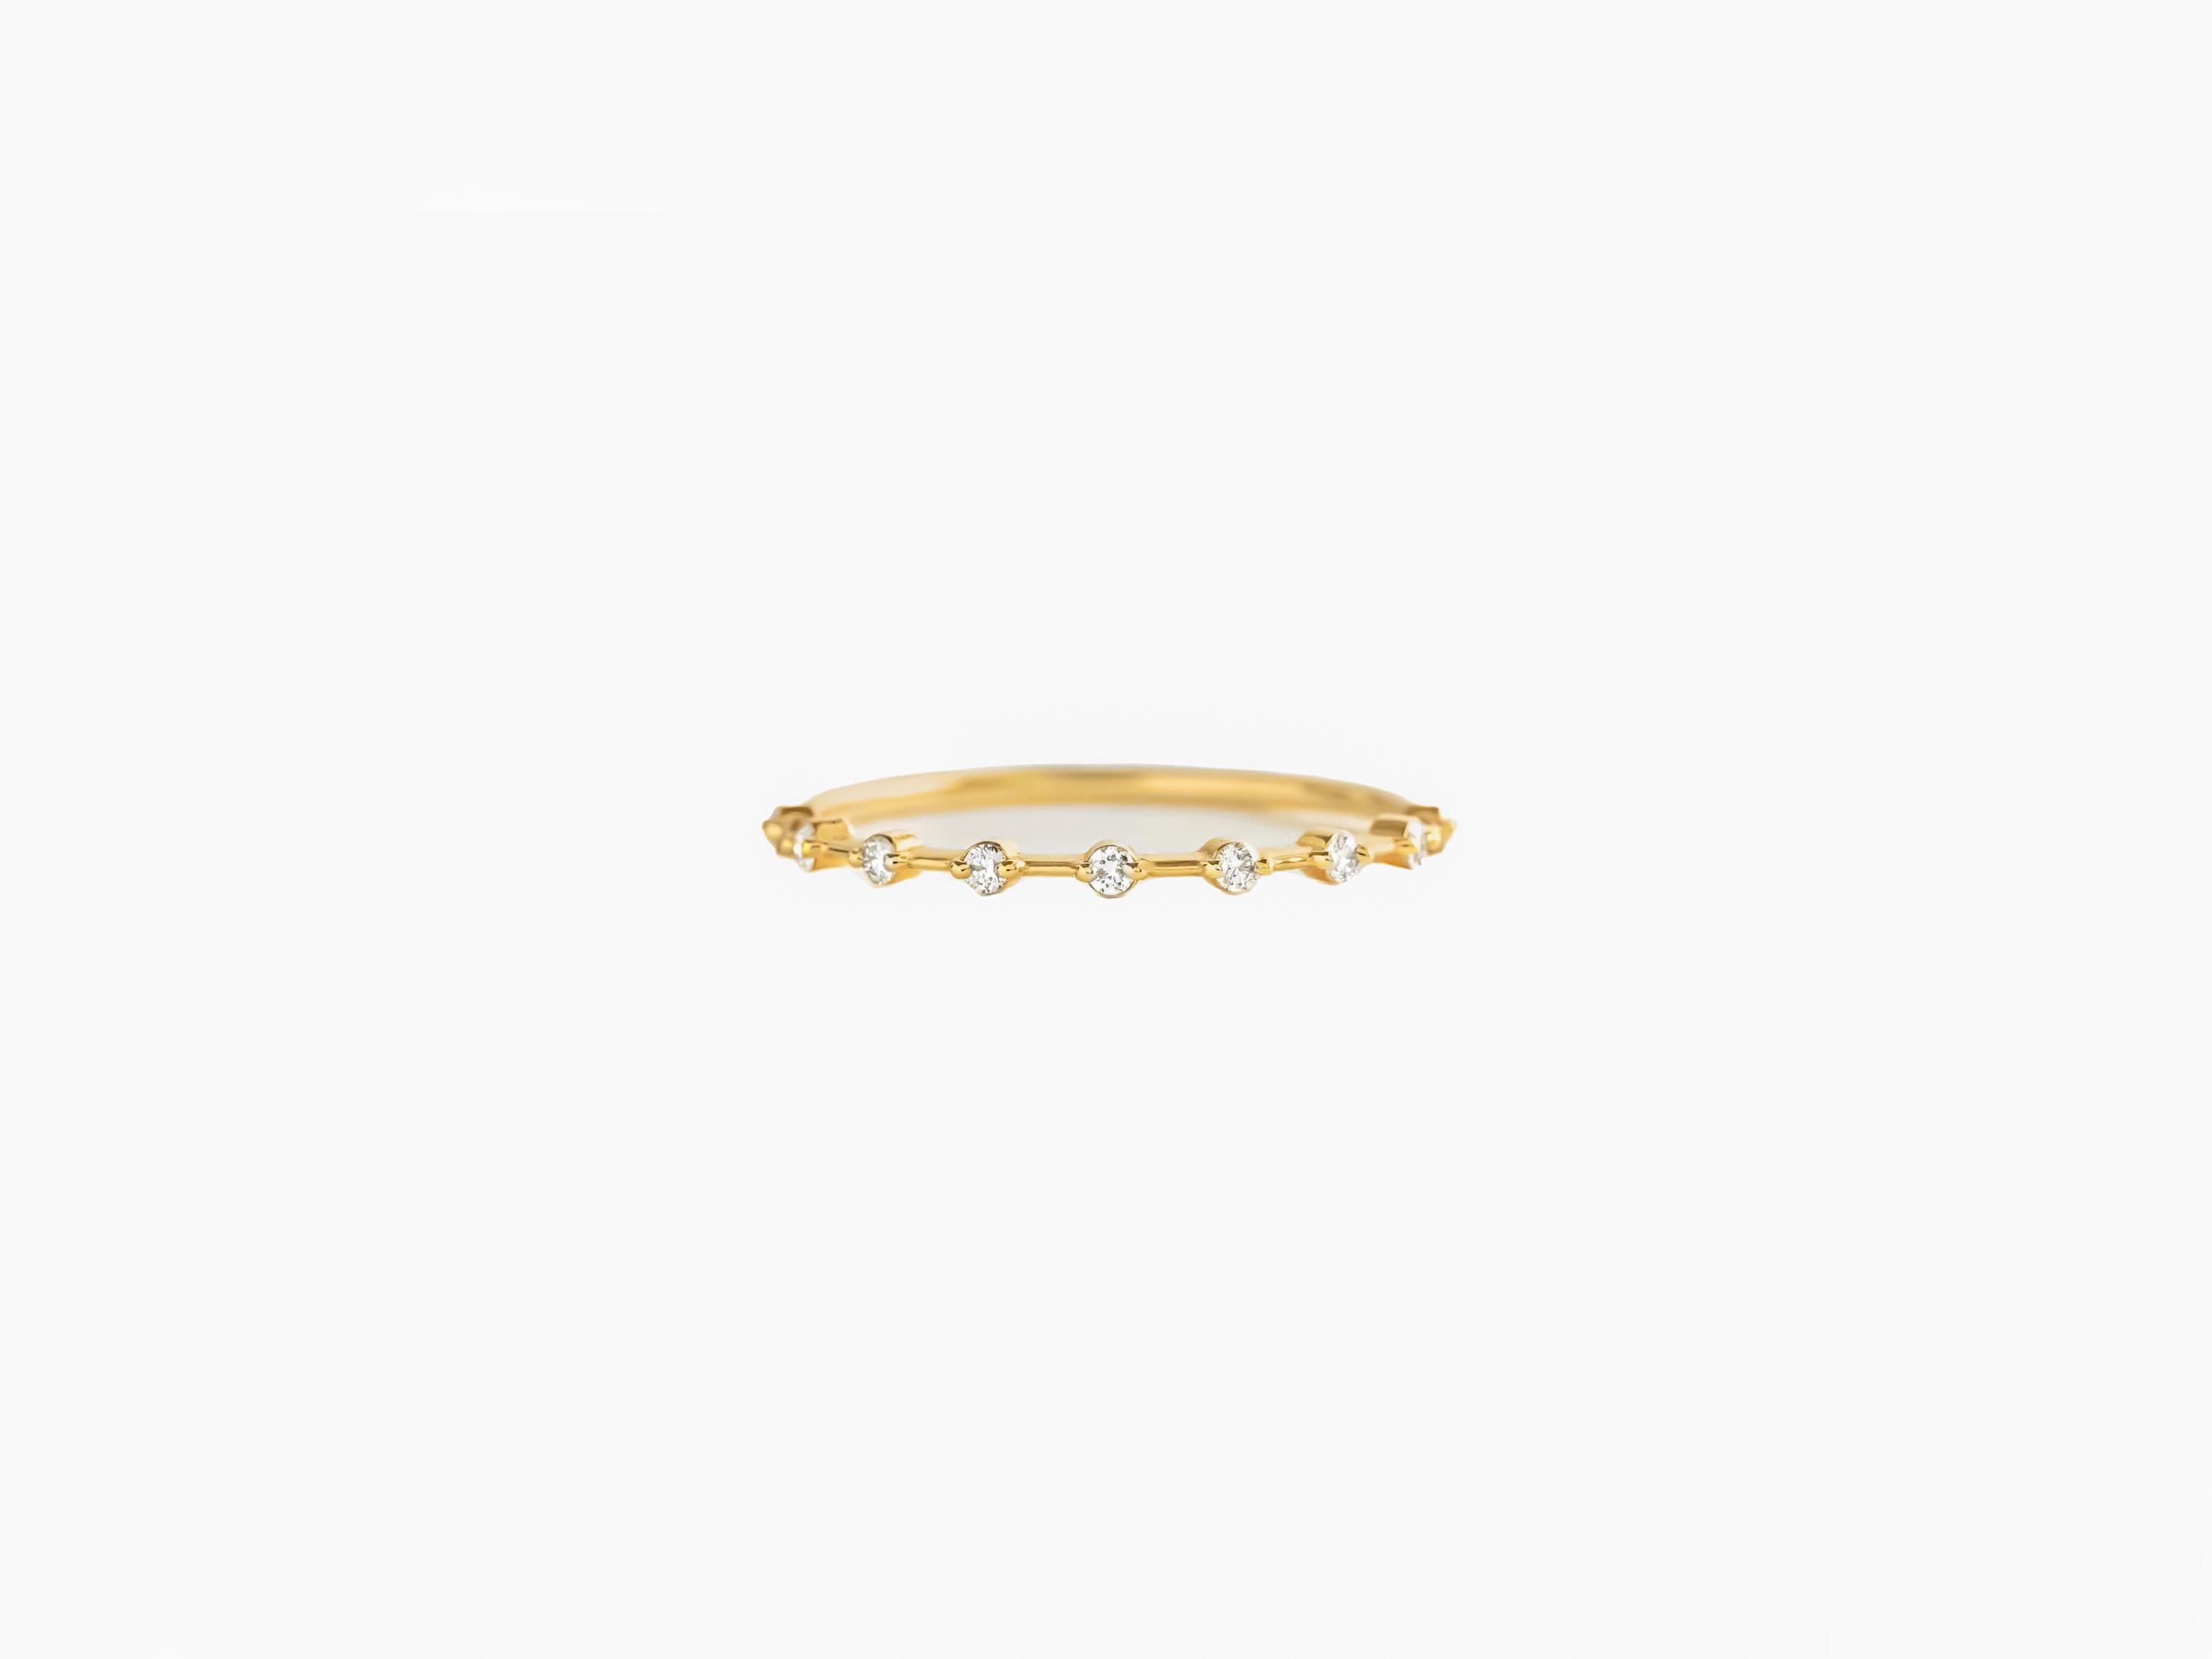 For Sale:  Half eternity moissanite 14k gold ring. 2